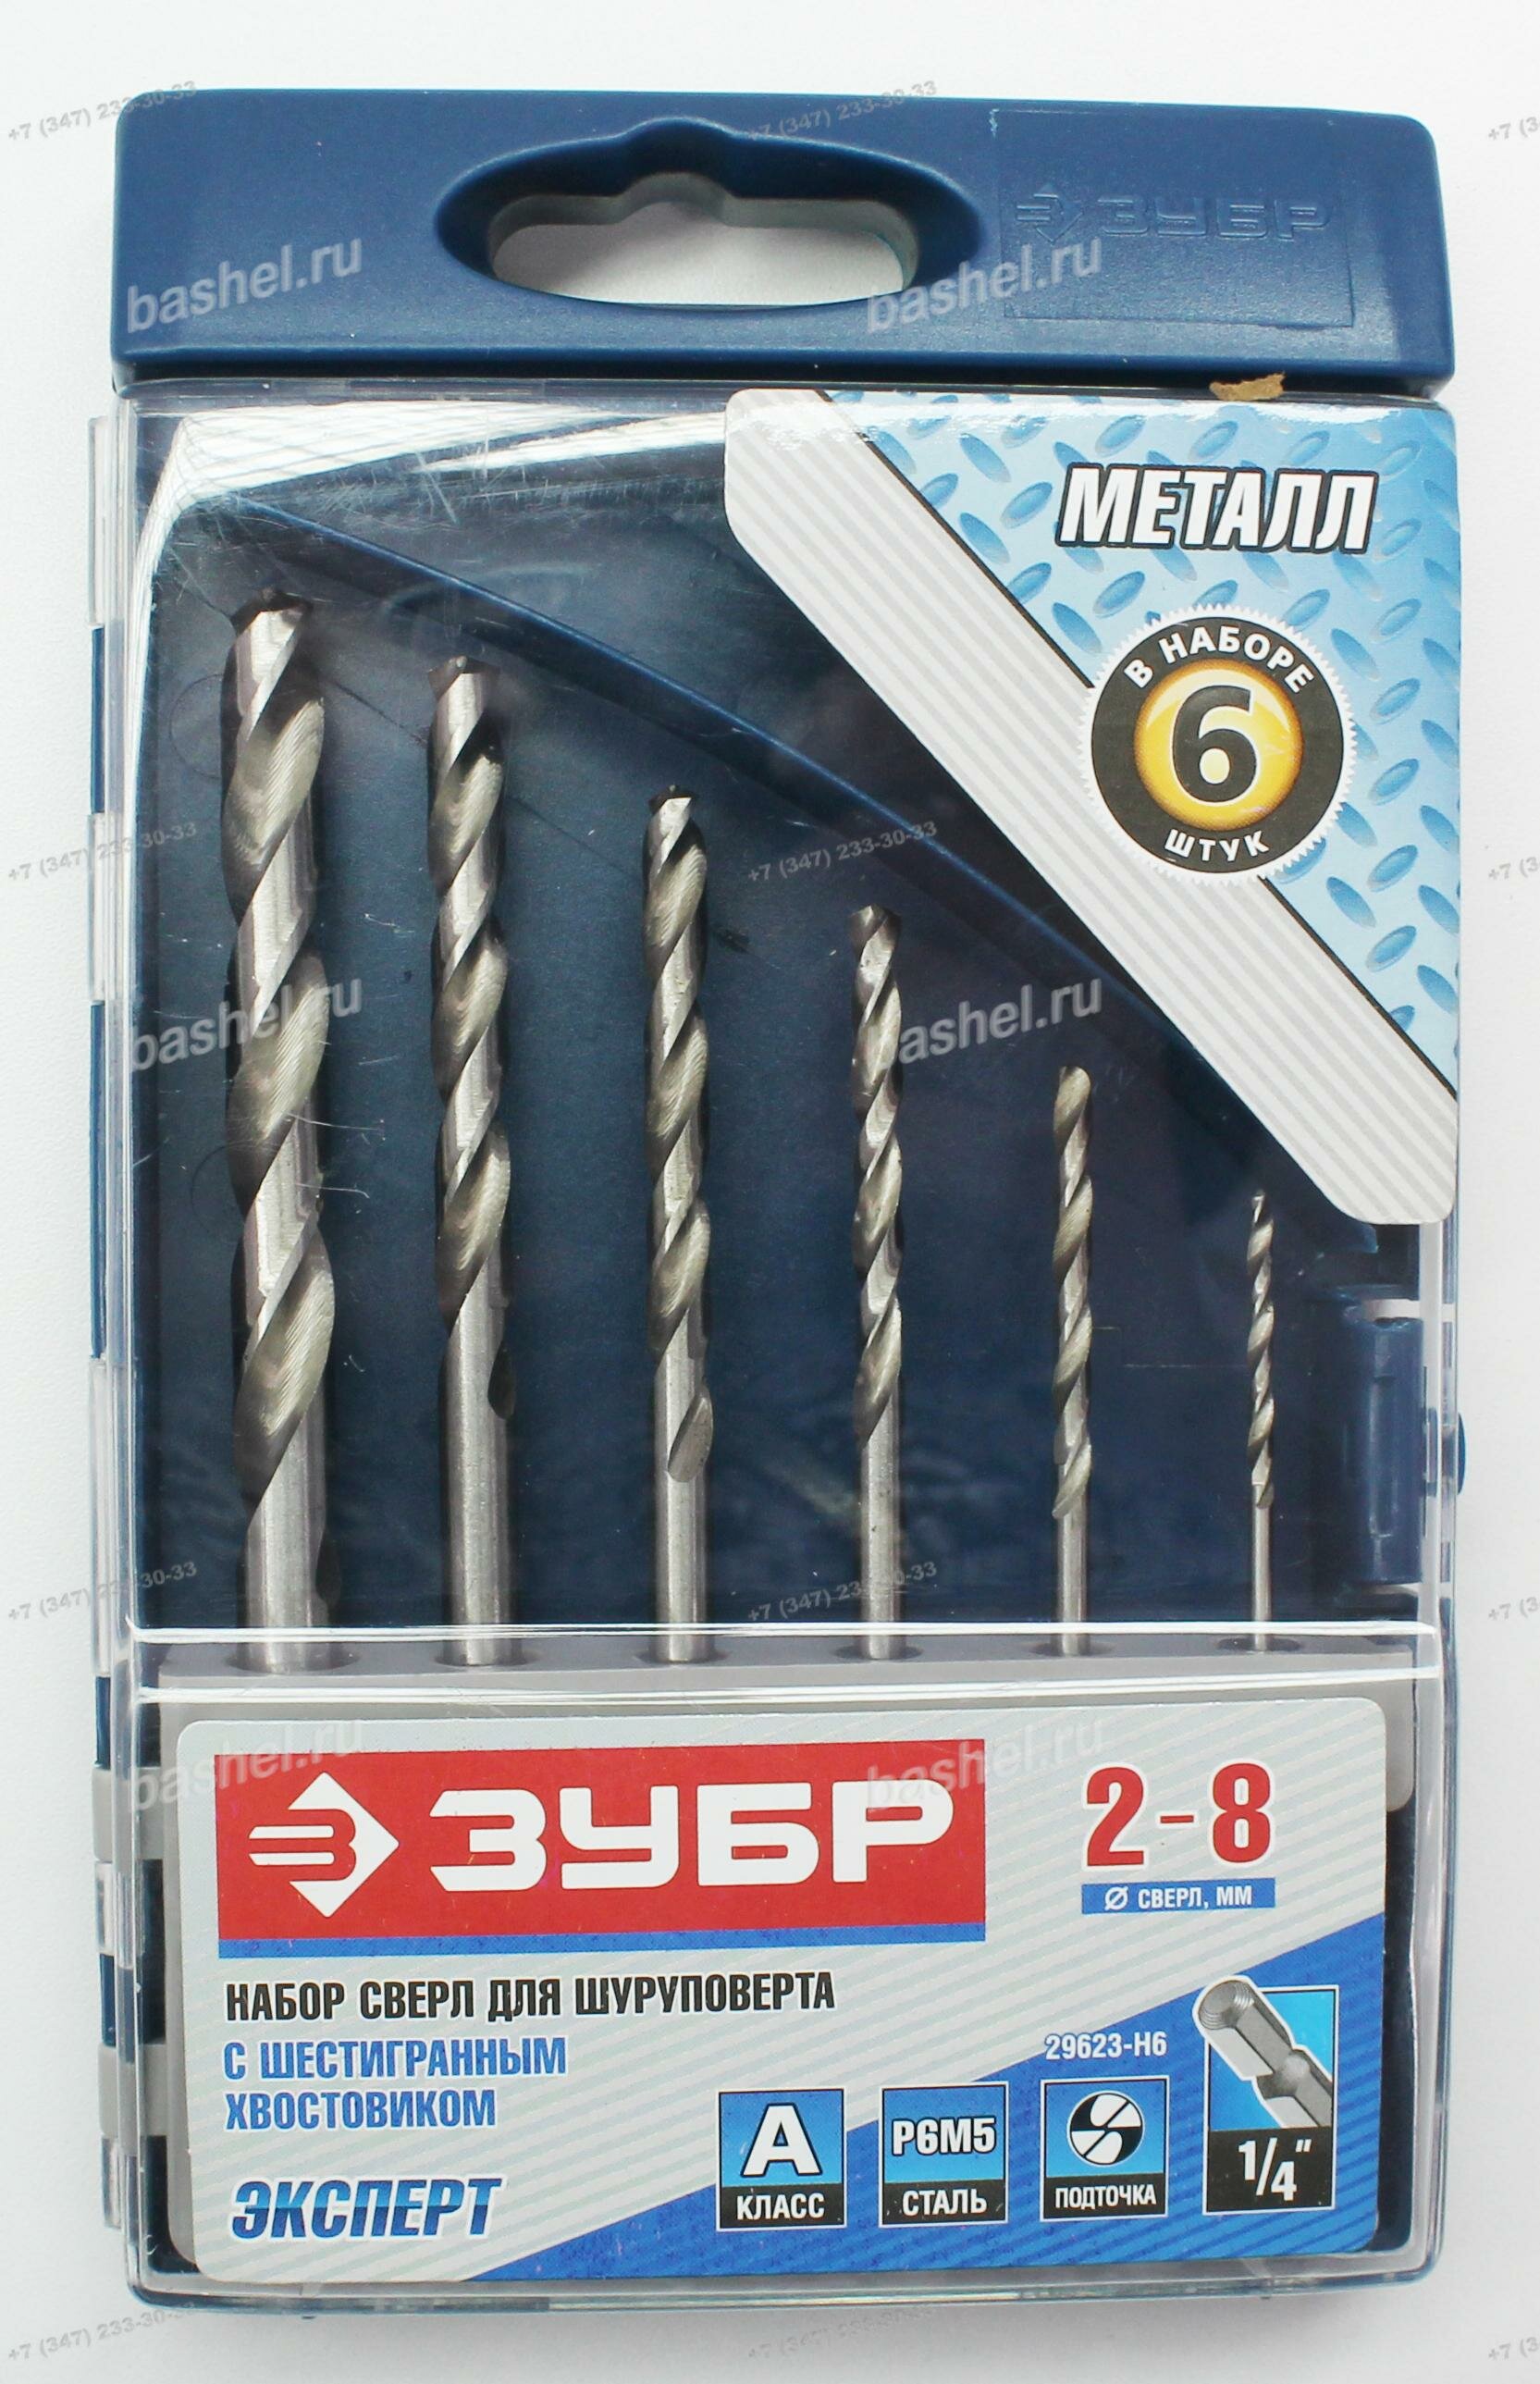 Набор сверл по металлу ЗУБР ПРОФ-а 6 шт.(2-8 мм) с шестигранным хвостовиком сталь Р6М5 класс А электротовар